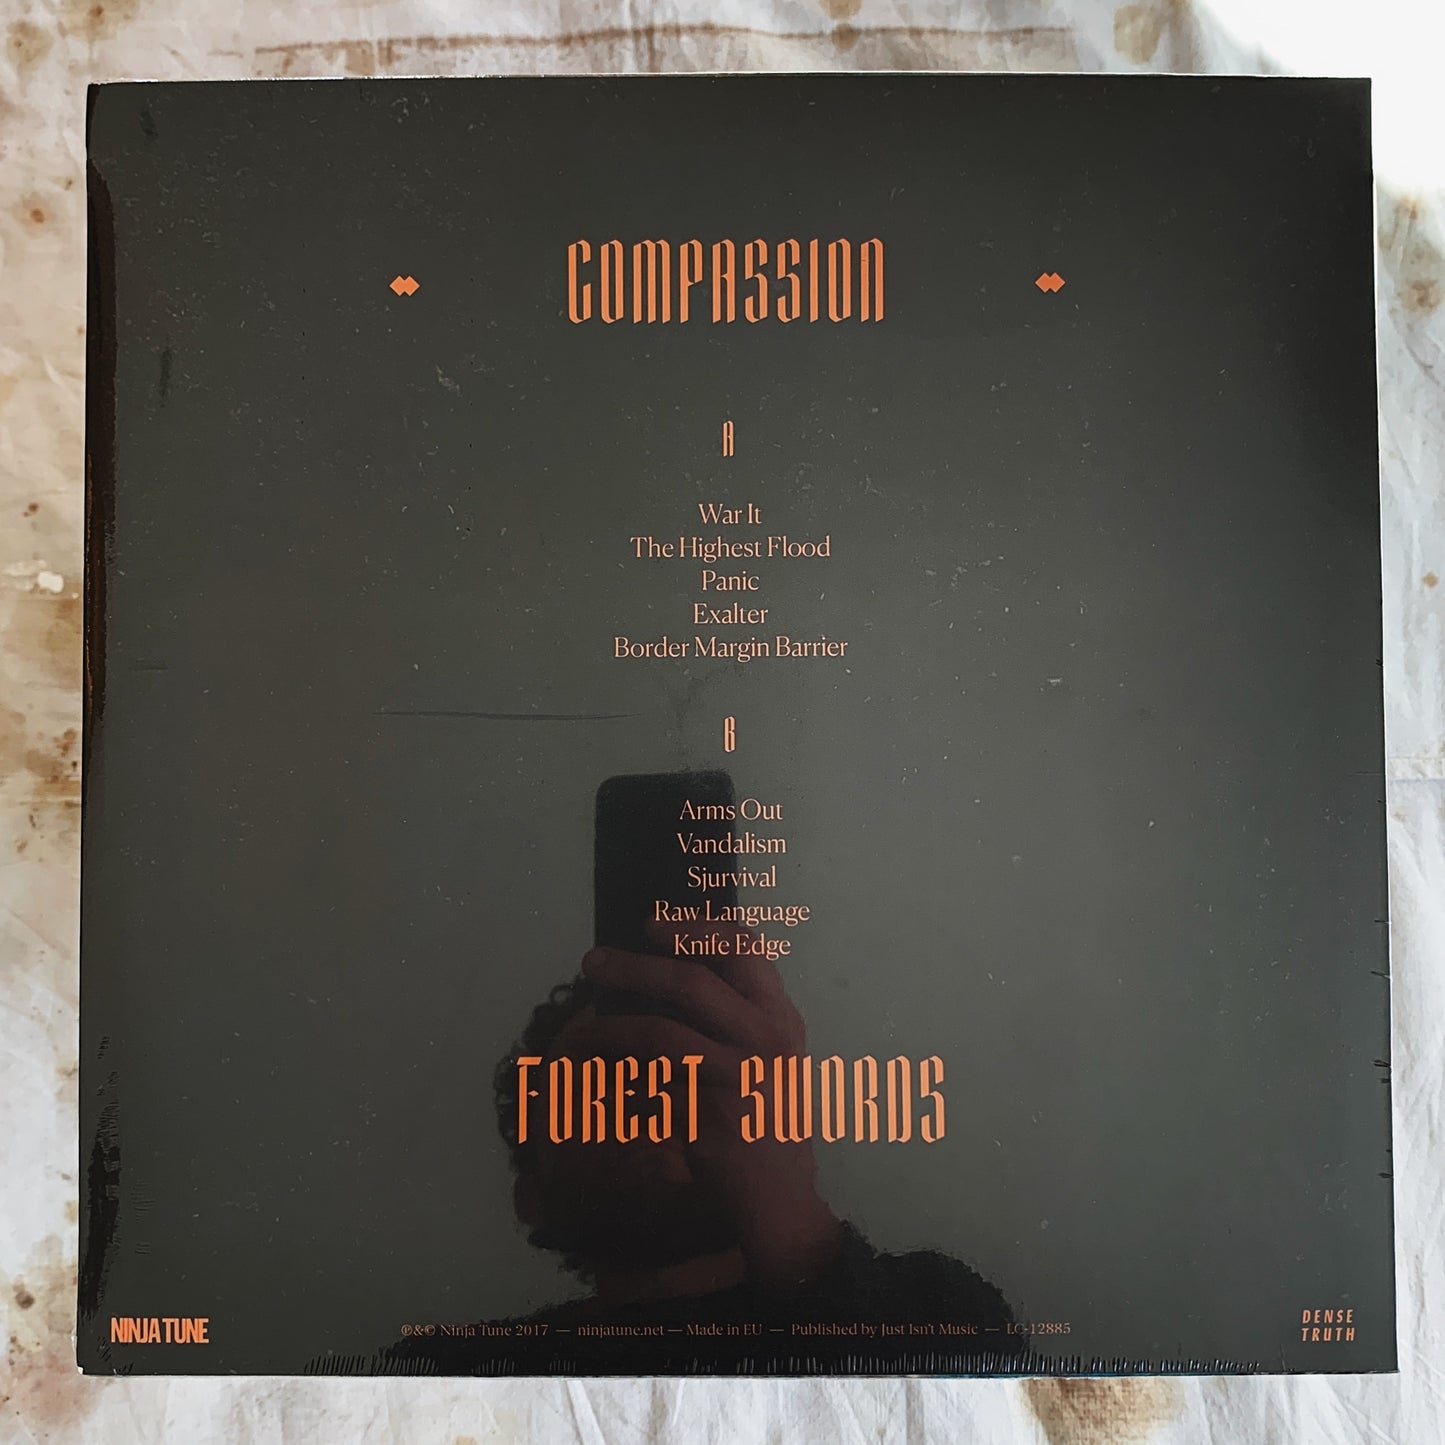 Forest Swords / Compassion LP